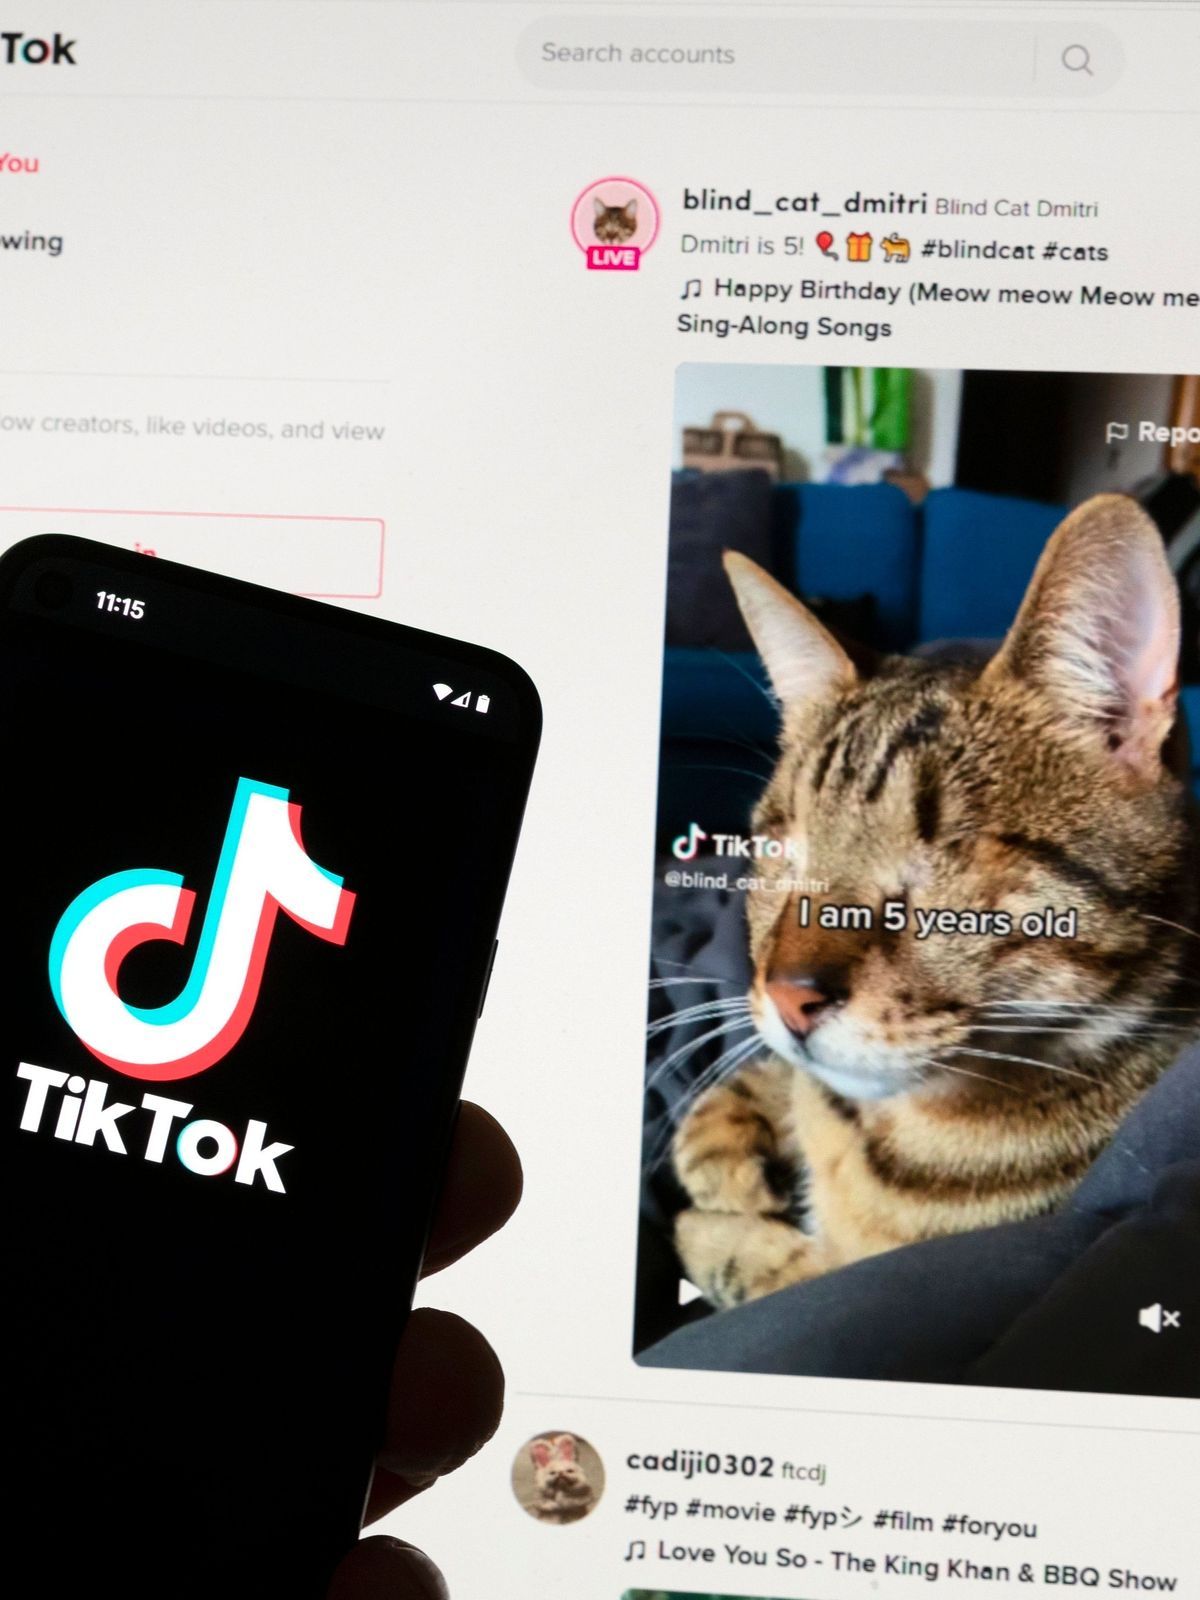 Das TikTok-Logo ist auf einem Mobiltelefon vor einem Computerbildschirm zu sehen, der den TikTok-Startbildschirm anzeigt.